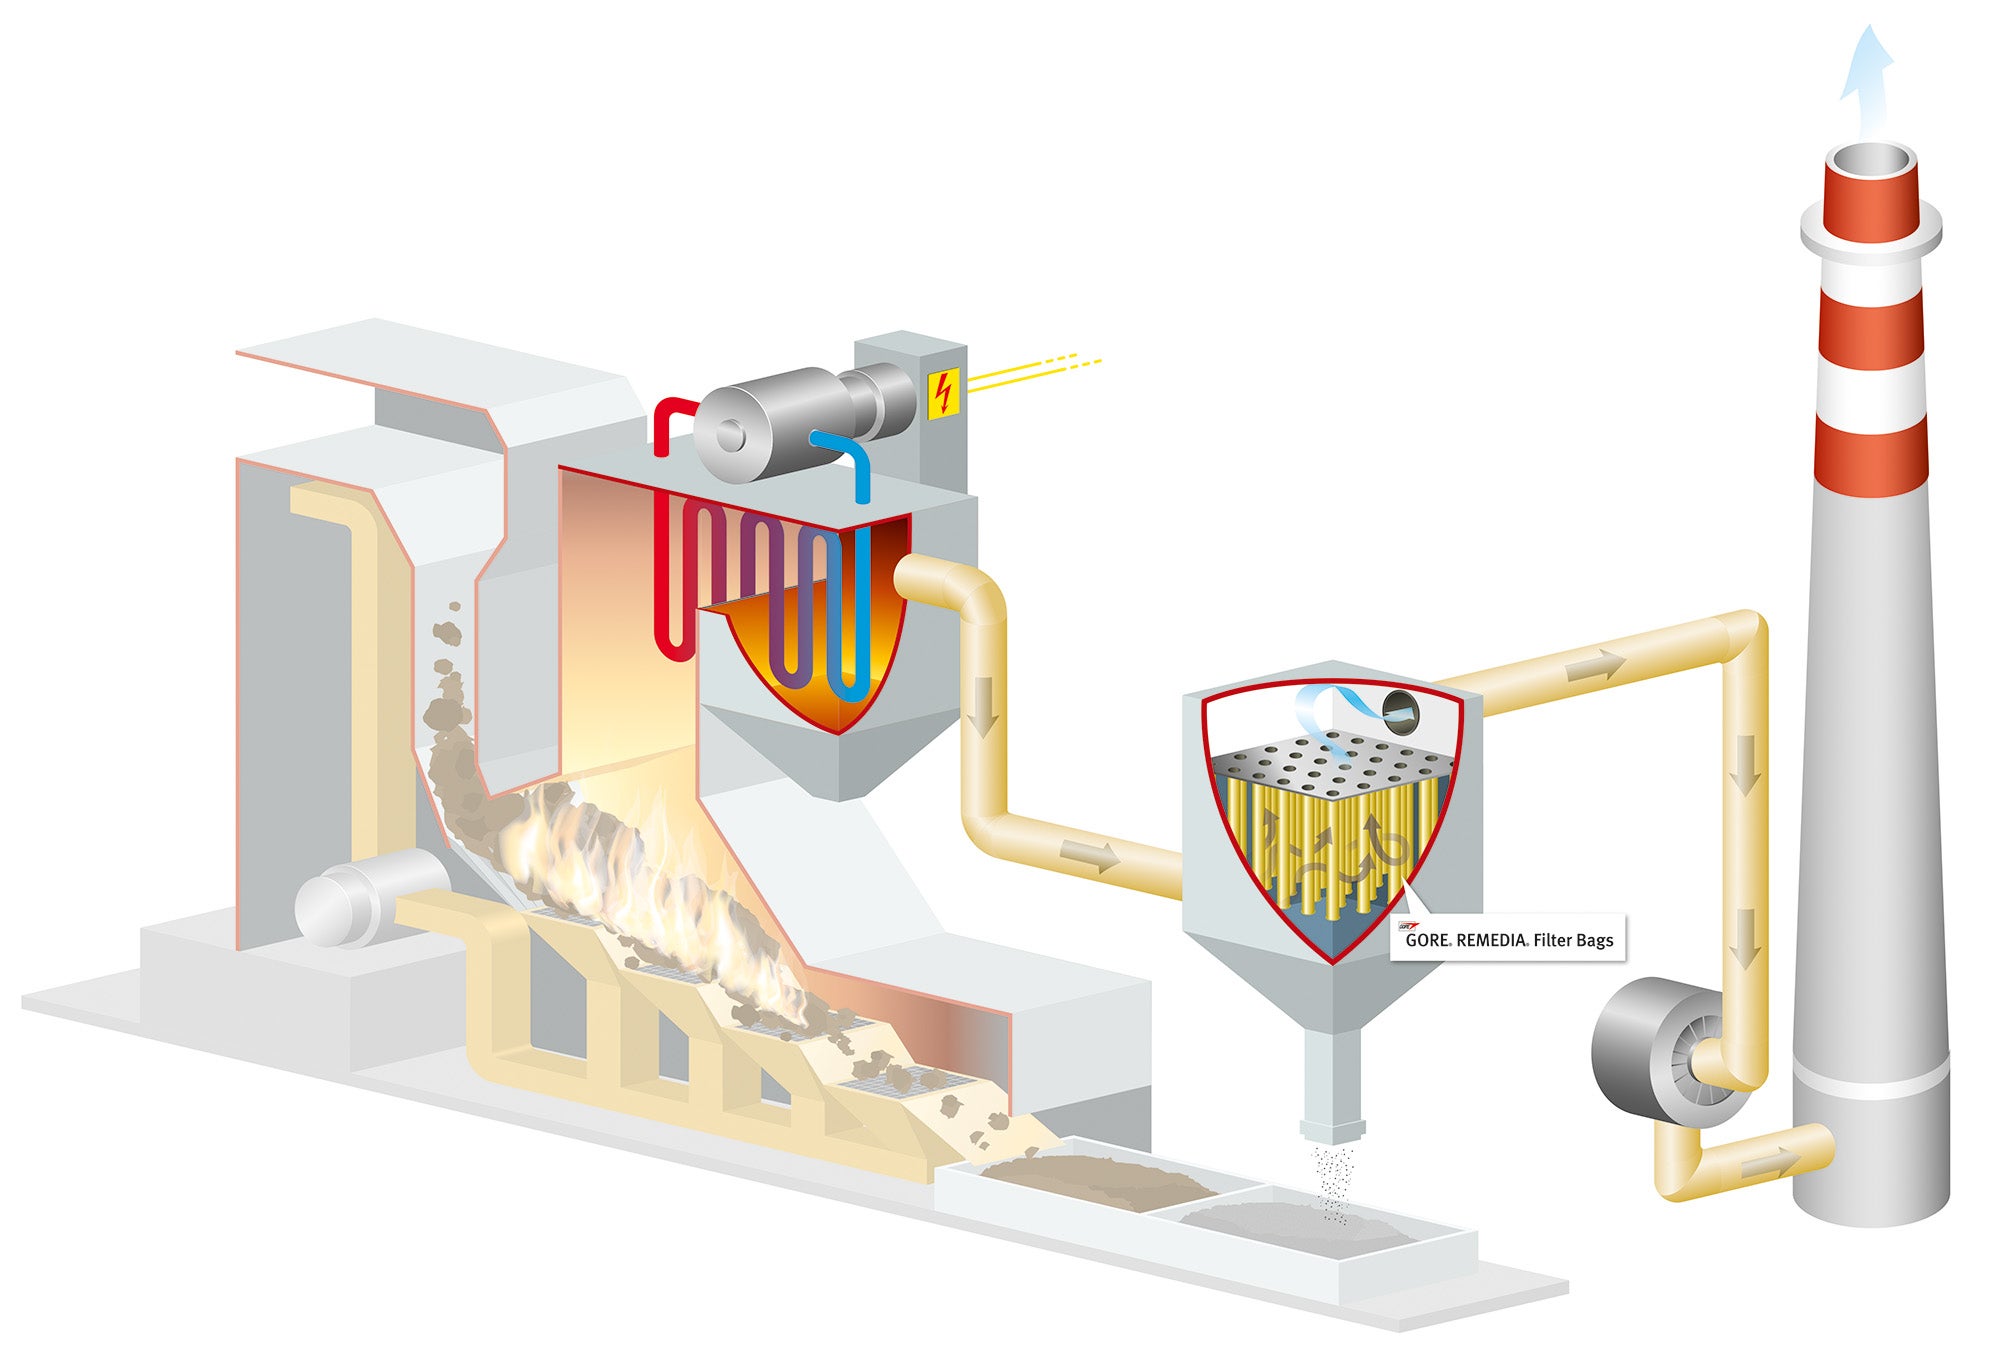 Infografik illustriert die Verwendung eines GORE REMEDIA Filterschlauchs in einer Verbrennungsanlage